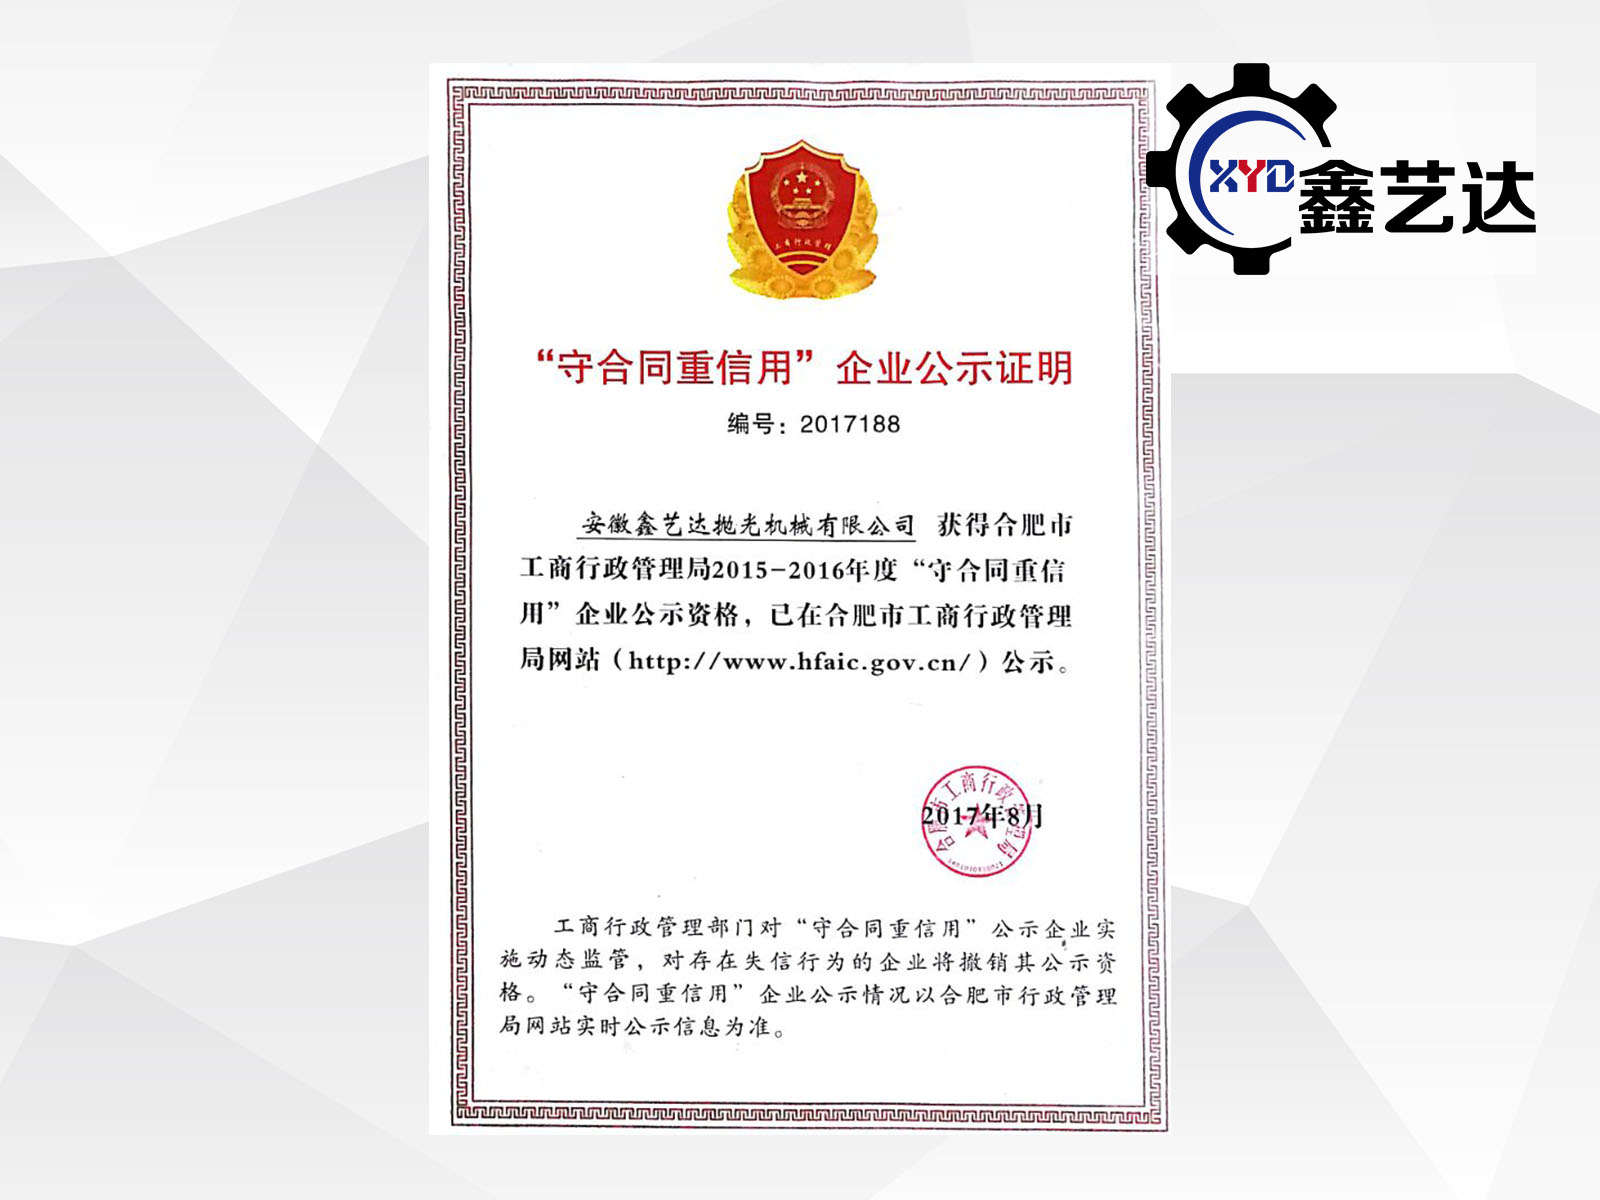 安徽鑫艺达再次获得“重合同守信用企业”荣誉称号